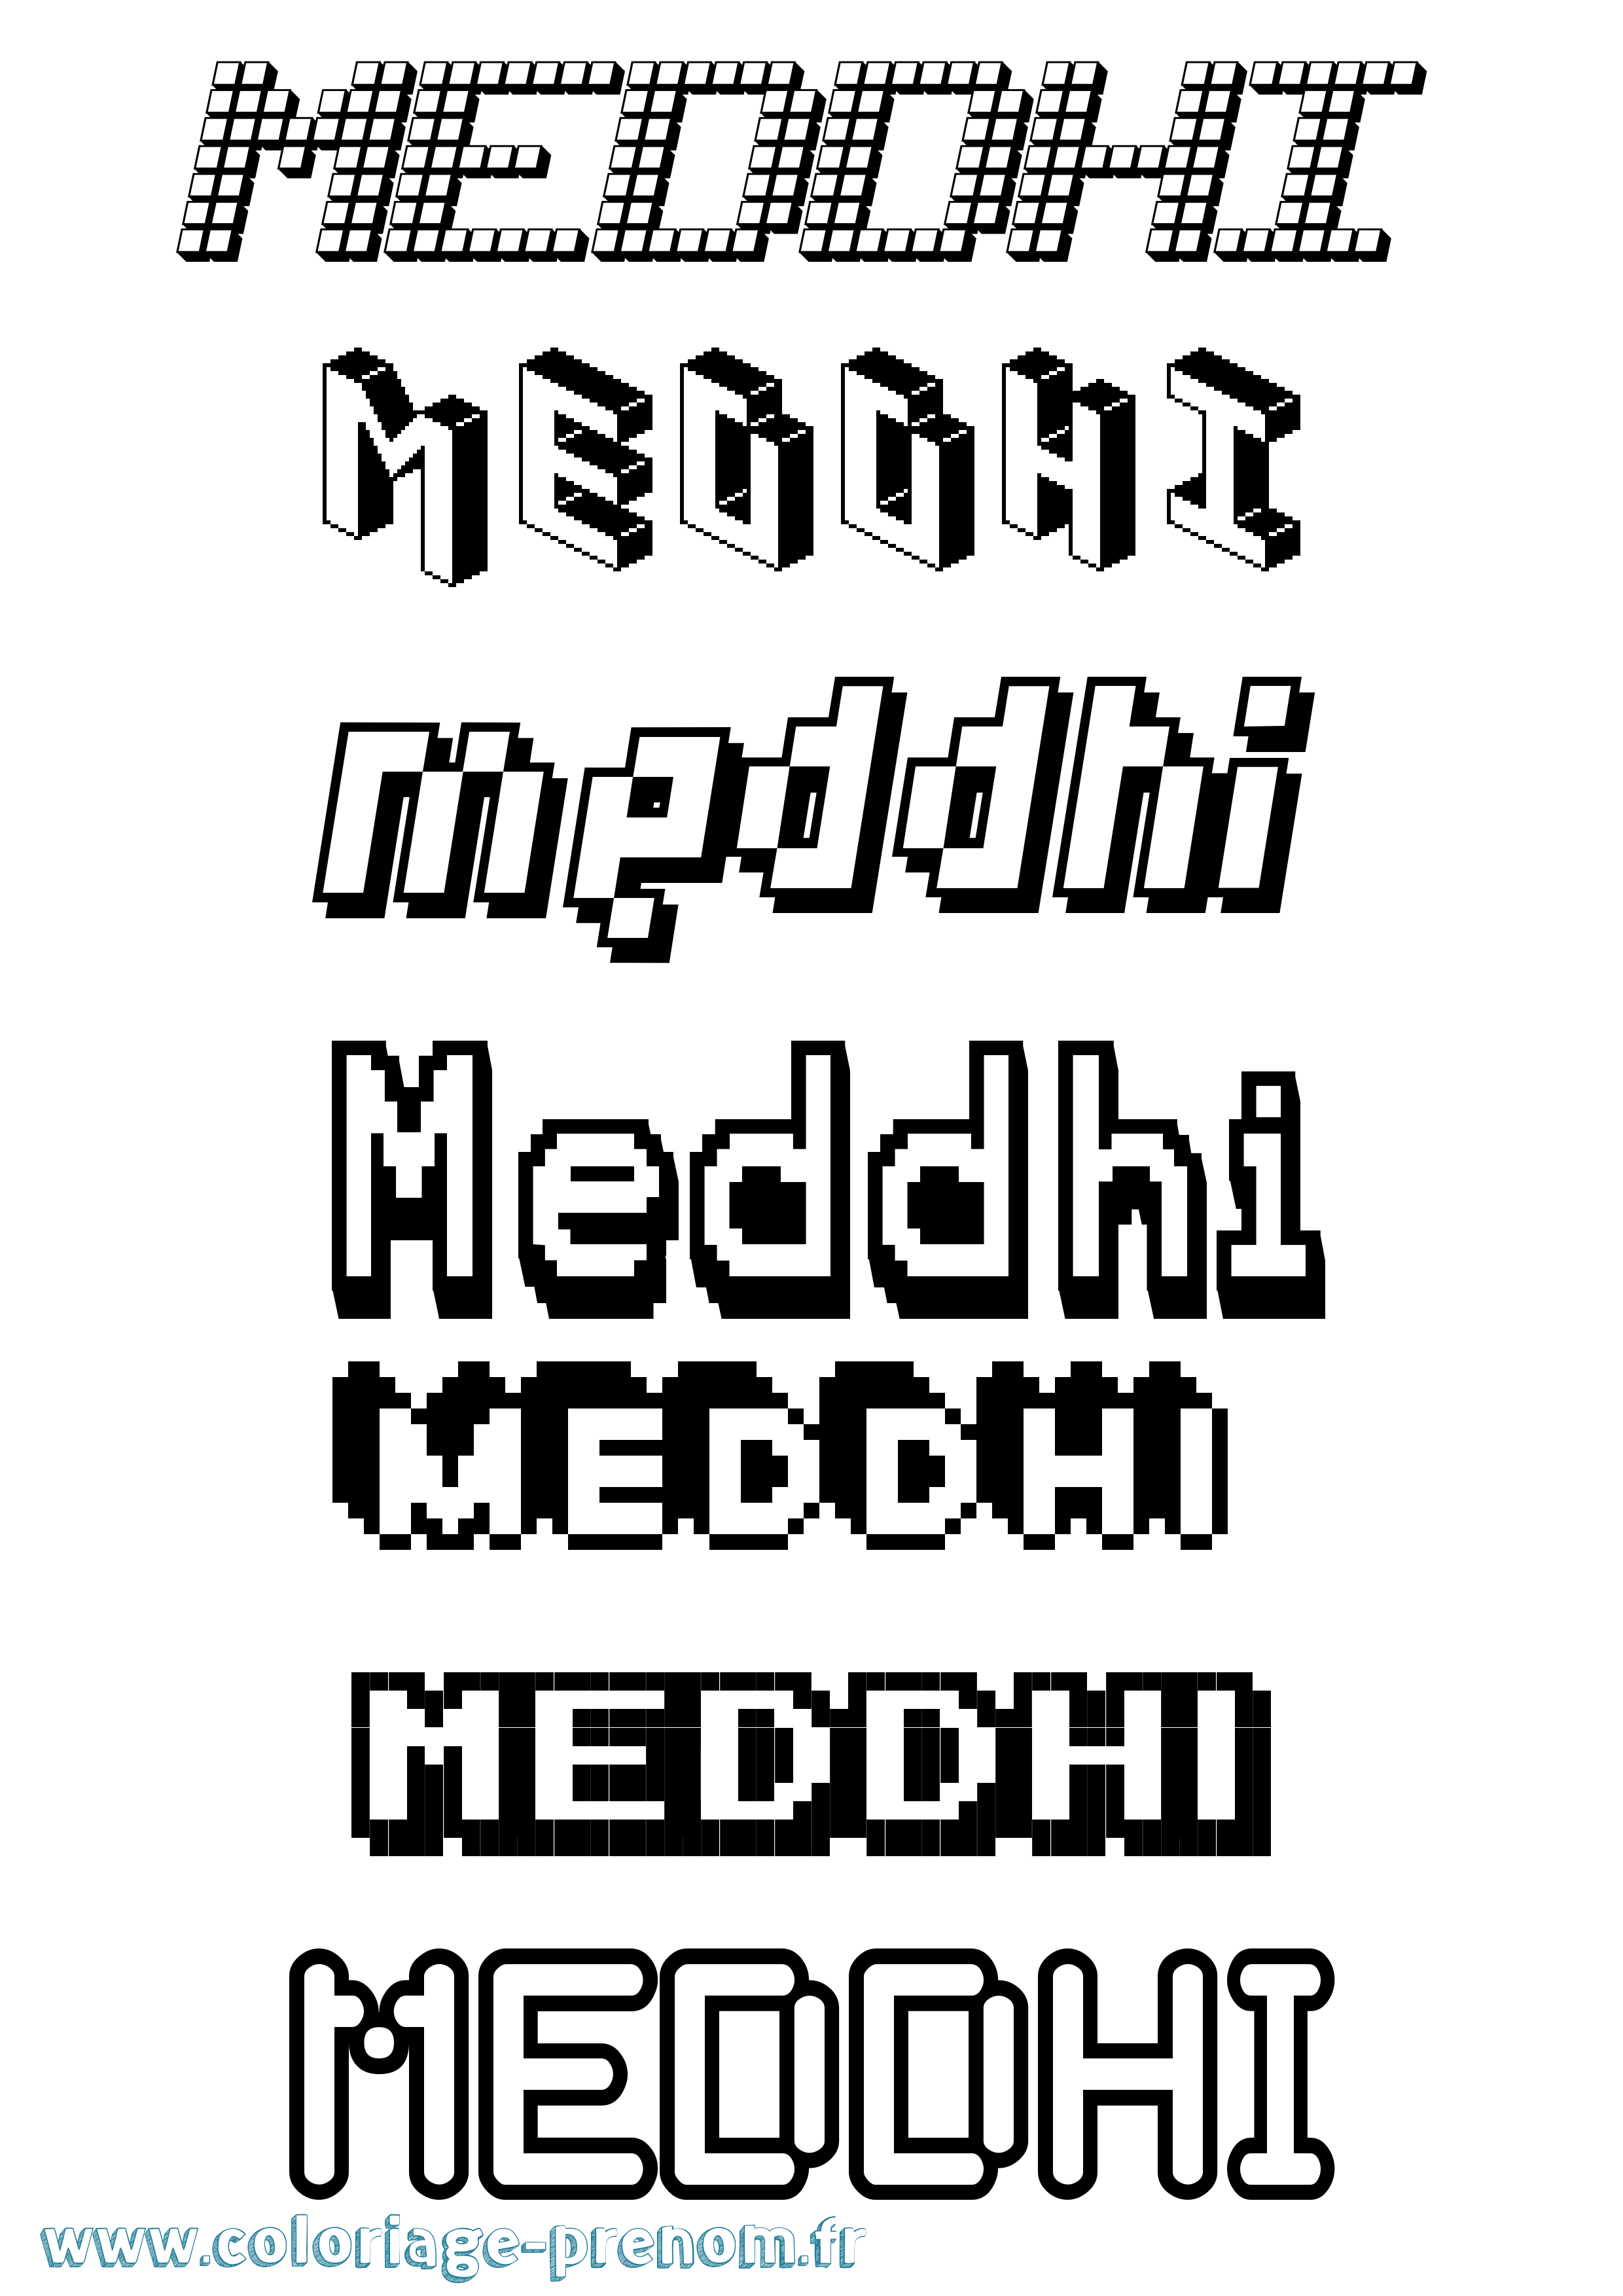 Coloriage prénom Meddhi Pixel